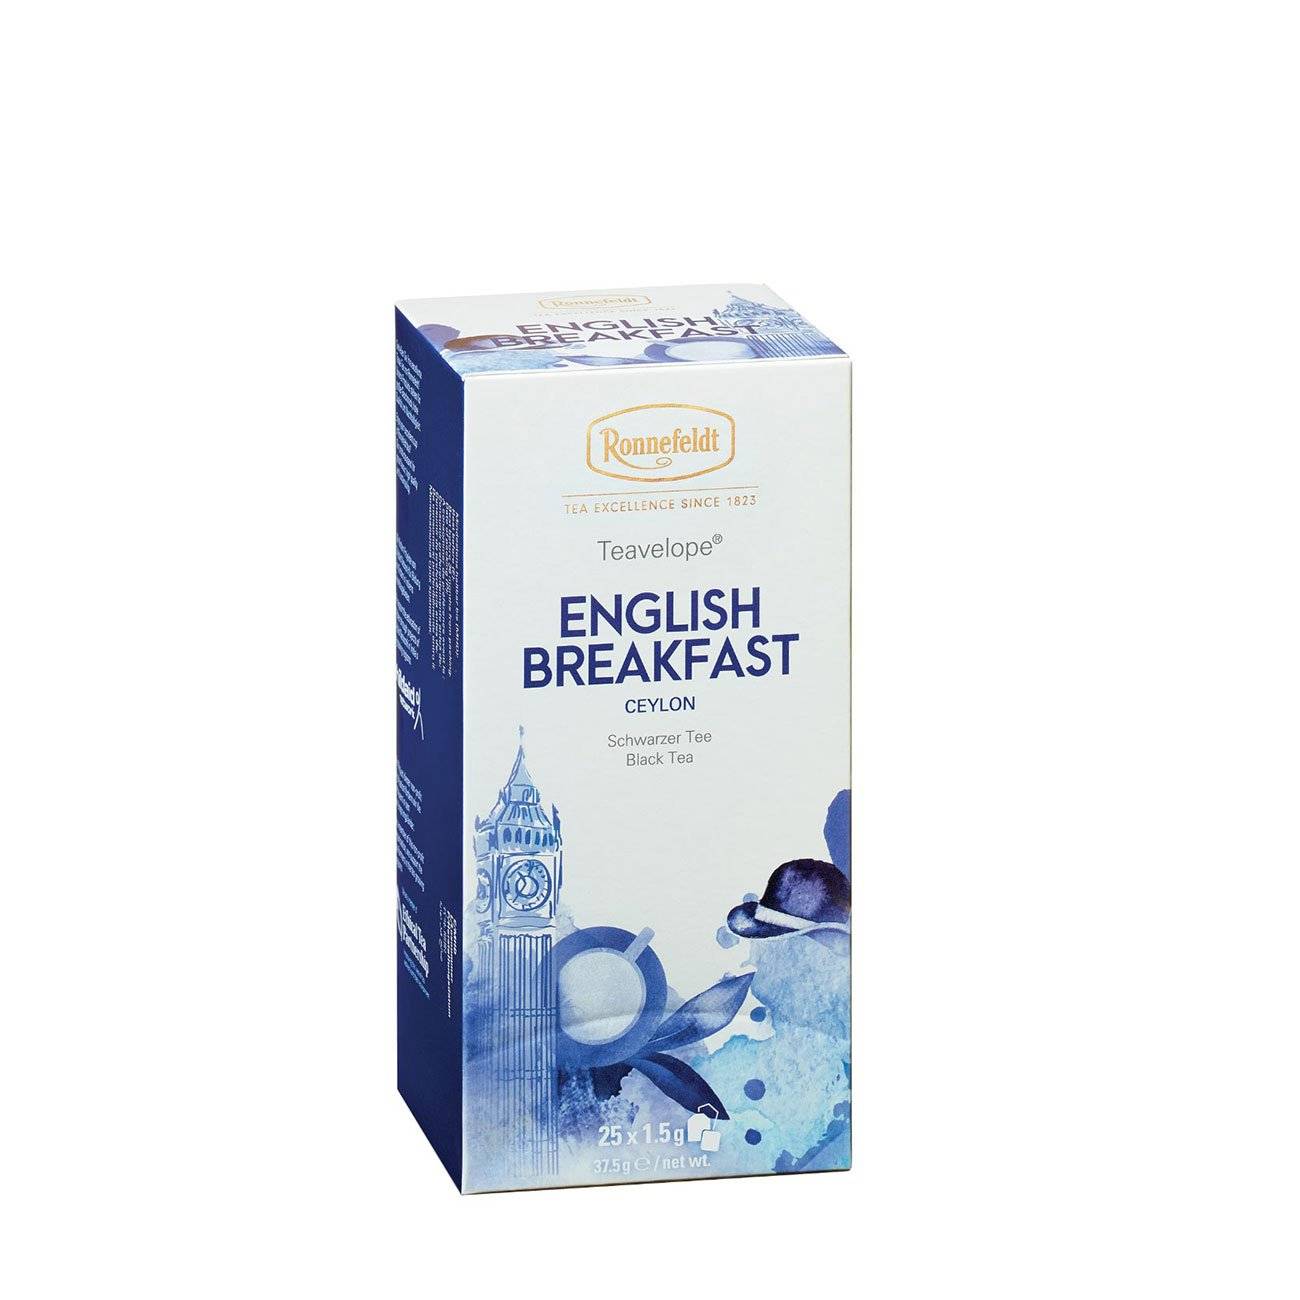 ENGLISH BREAKFAST TEA 37.5gr bestvalue.eu